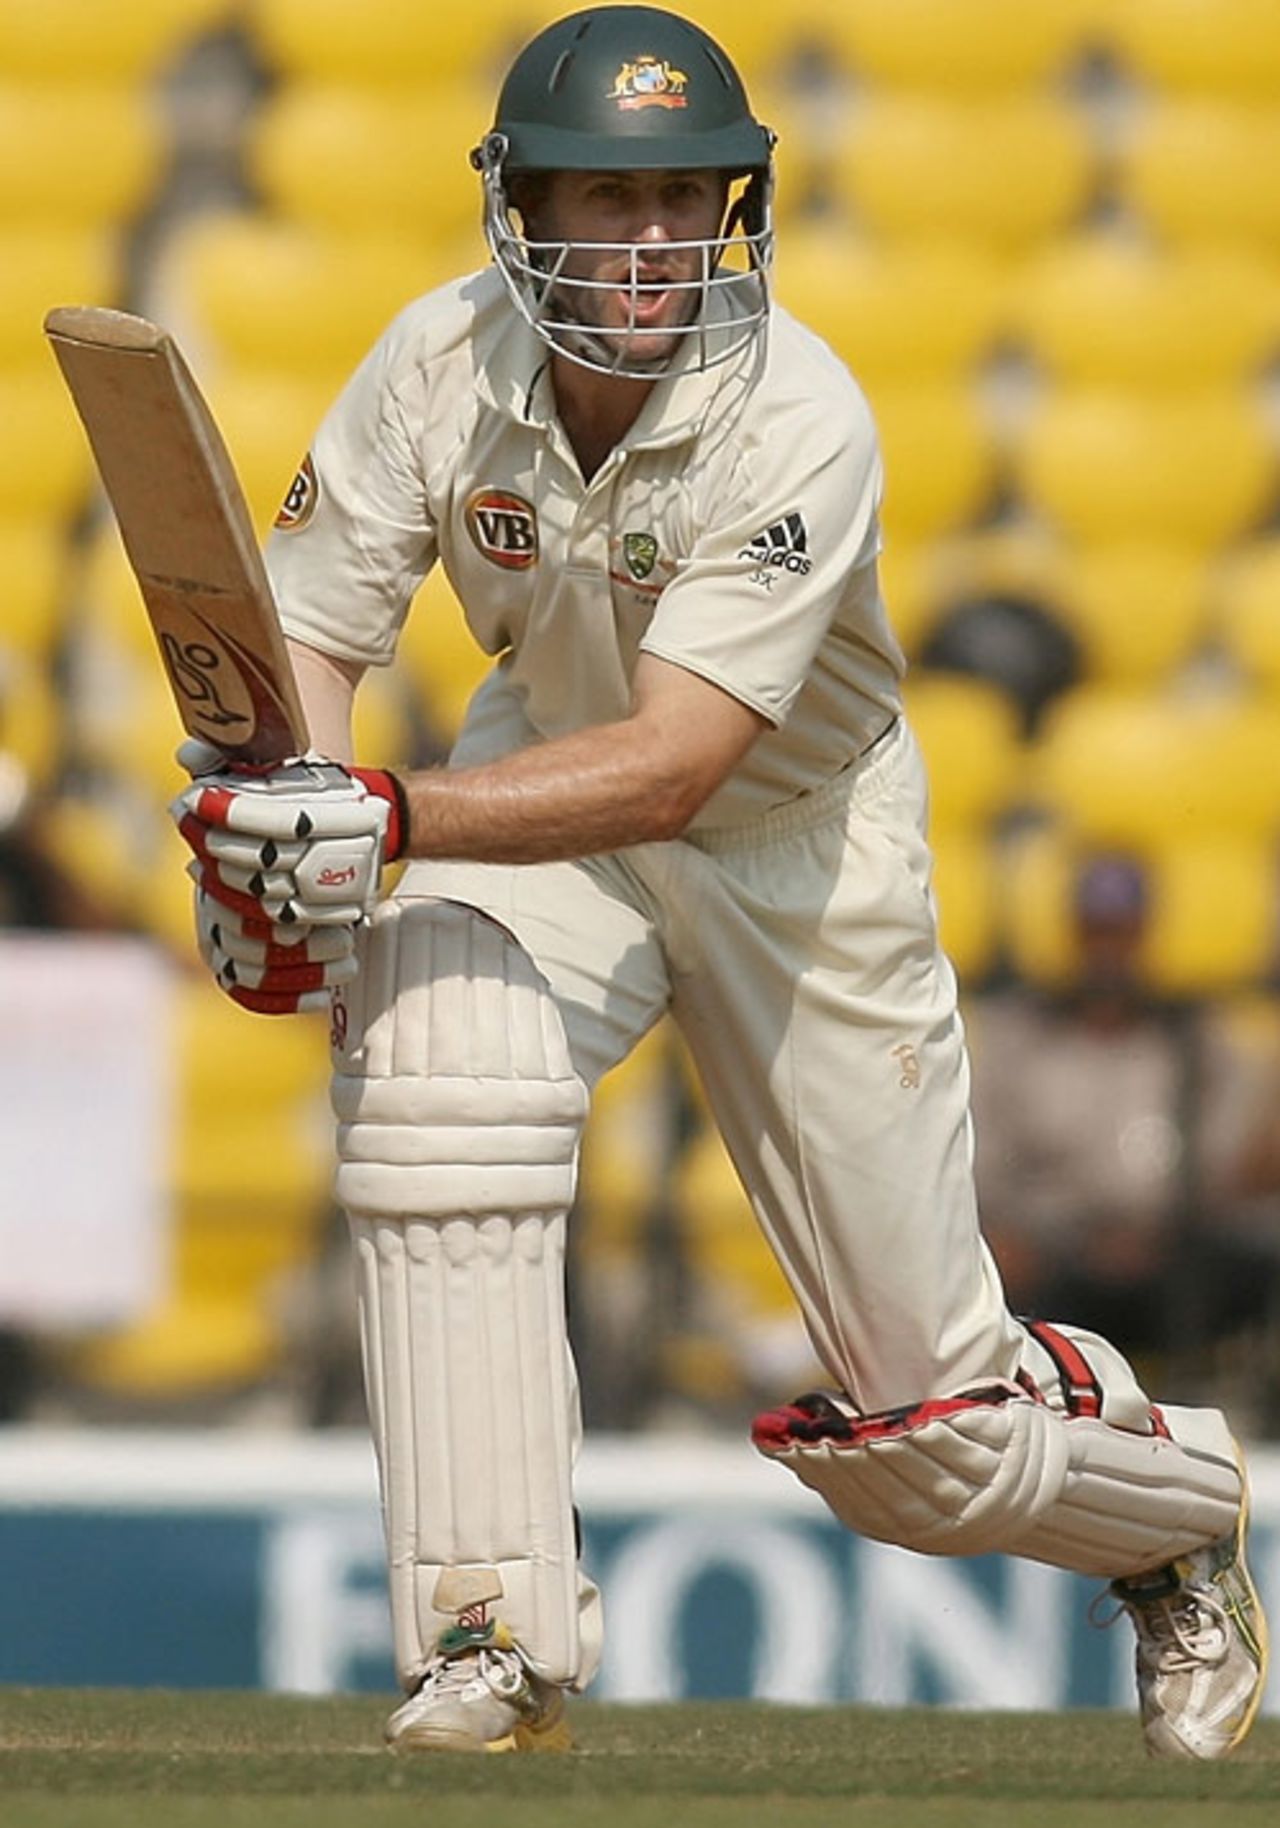 Simon Katich calls for a run, India v Australia, 4th Test, Nagpur, 3nd day, November 8, 2008